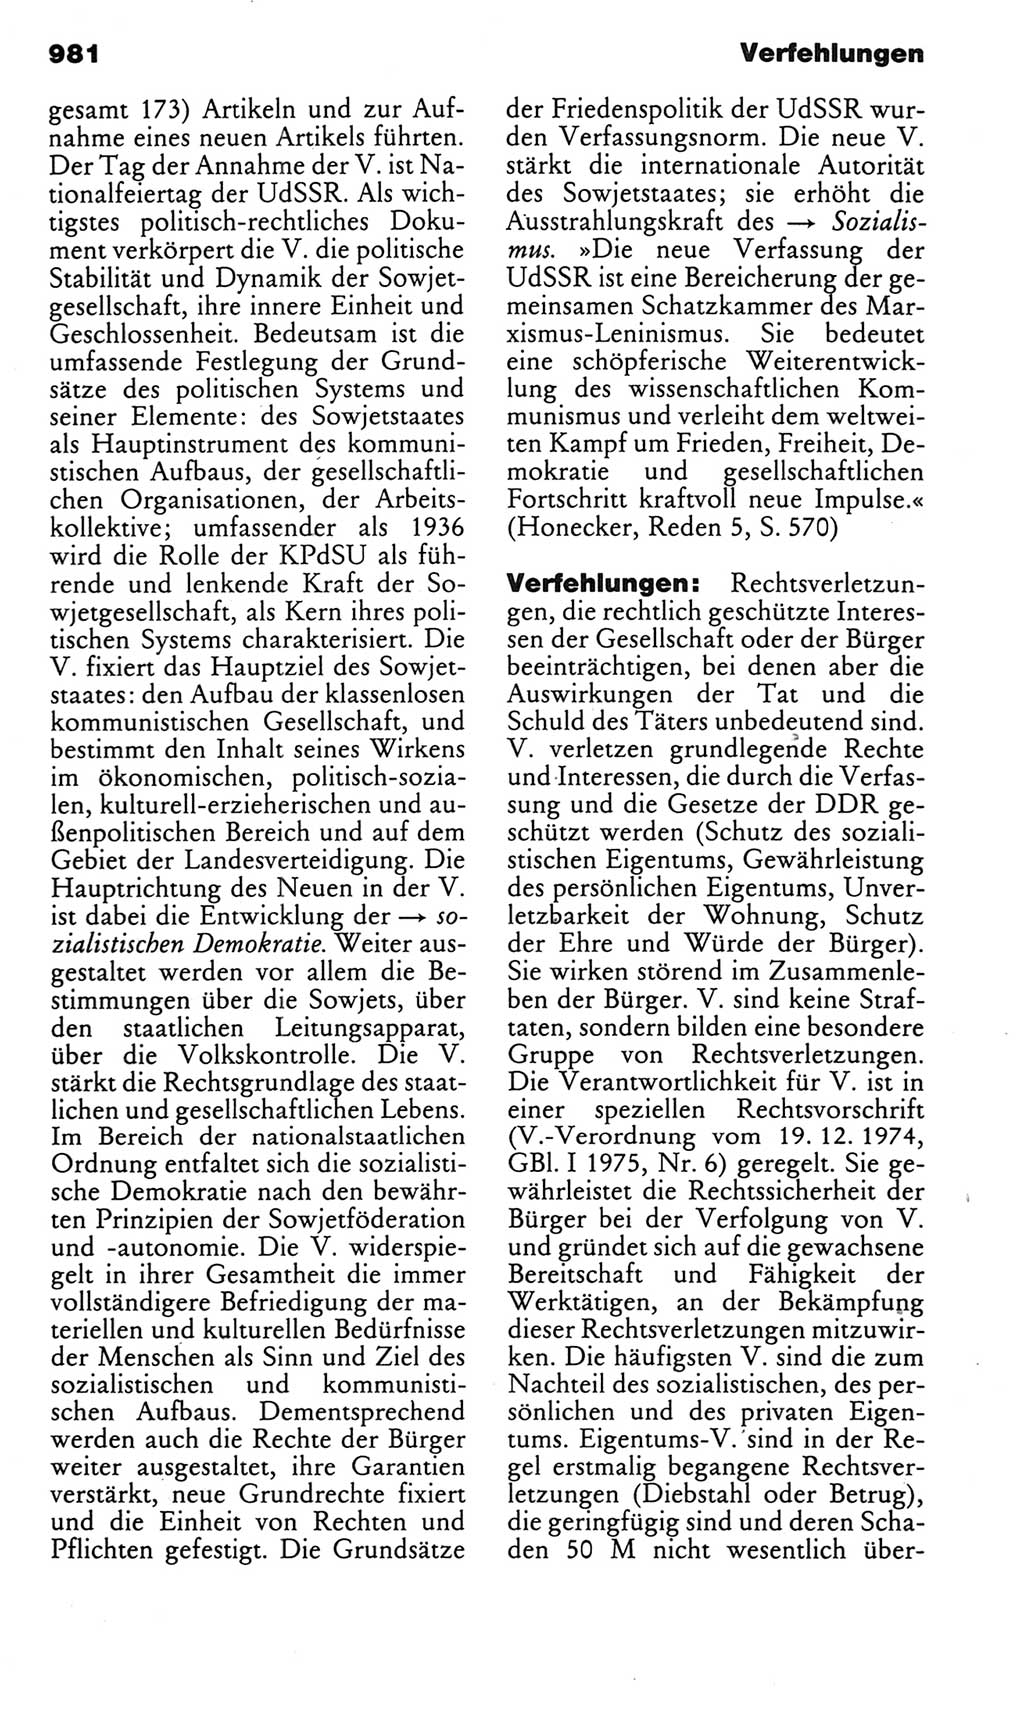 Kleines politisches Wörterbuch [Deutsche Demokratische Republik (DDR)] 1983, Seite 981 (Kl. pol. Wb. DDR 1983, S. 981)